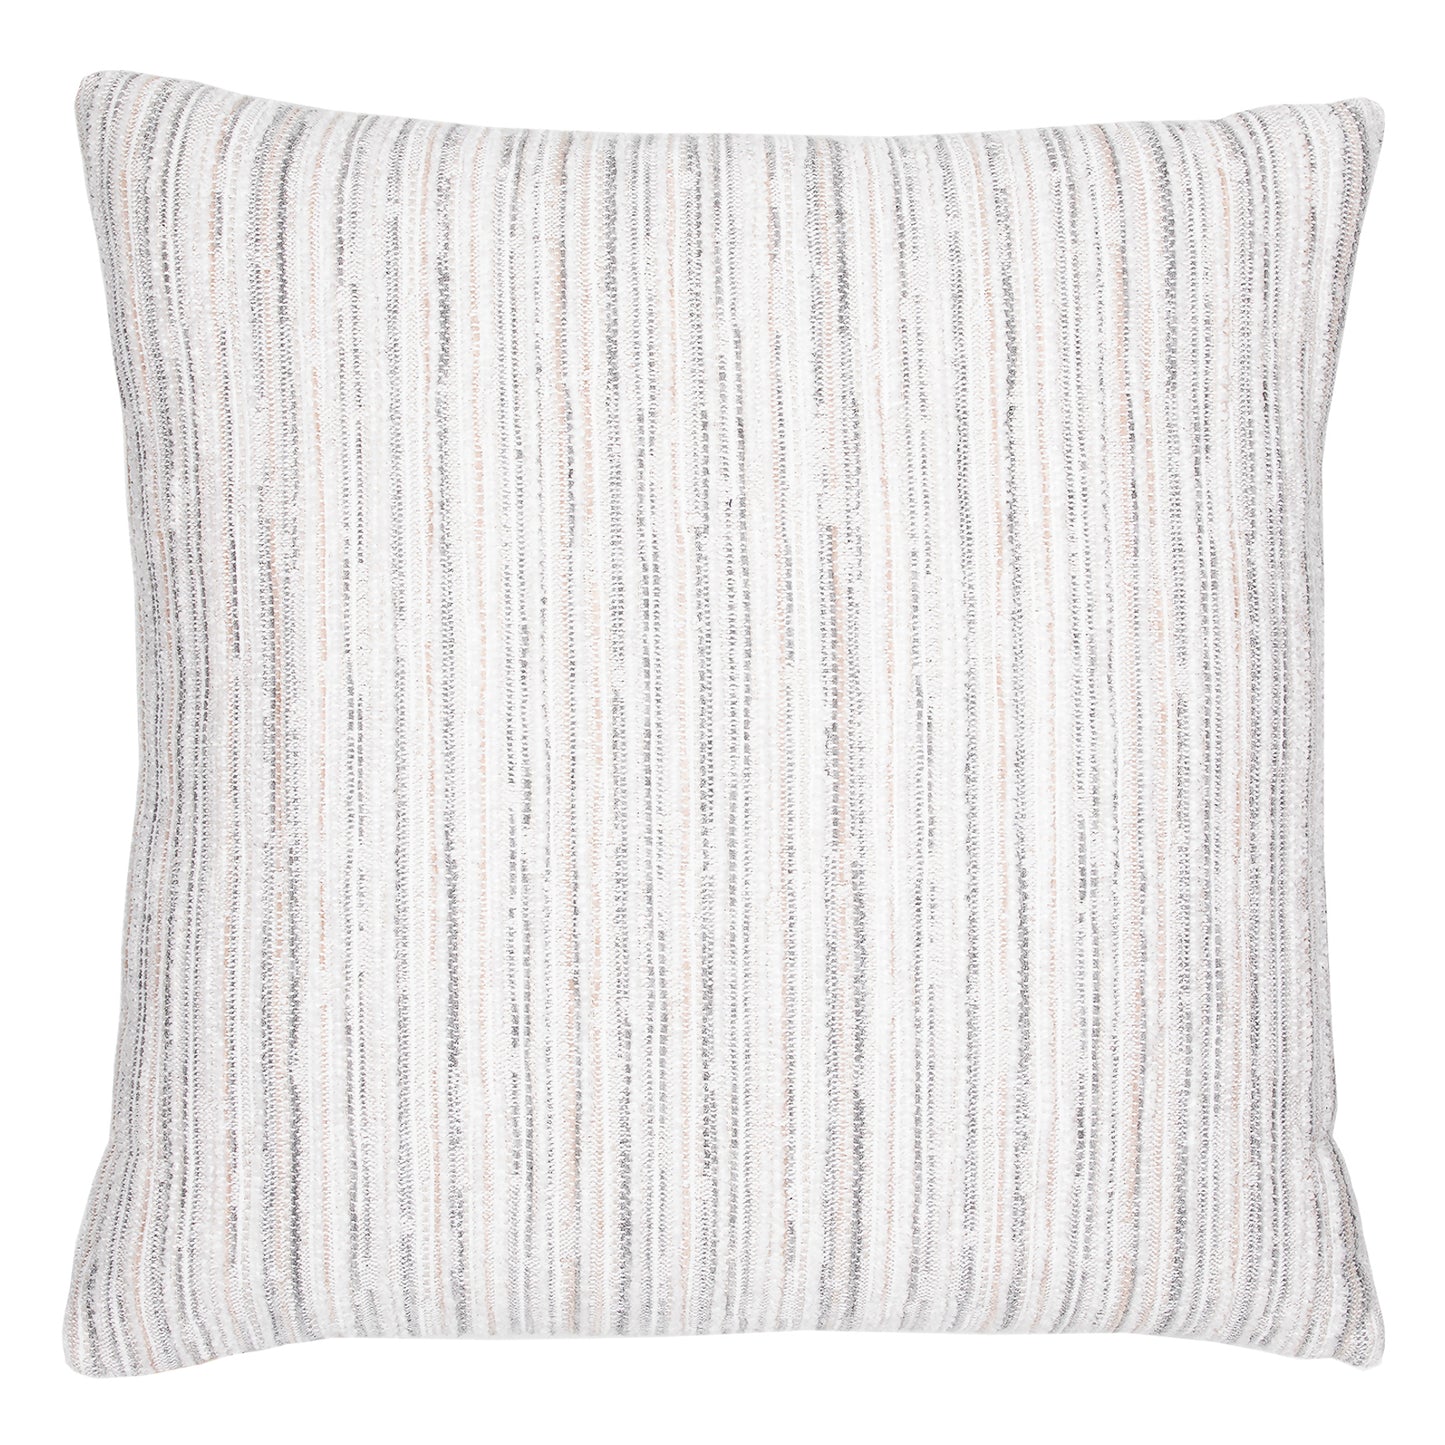 22" Square Elaine Smith Pillow  Luxe Stripe Pebble, image 1